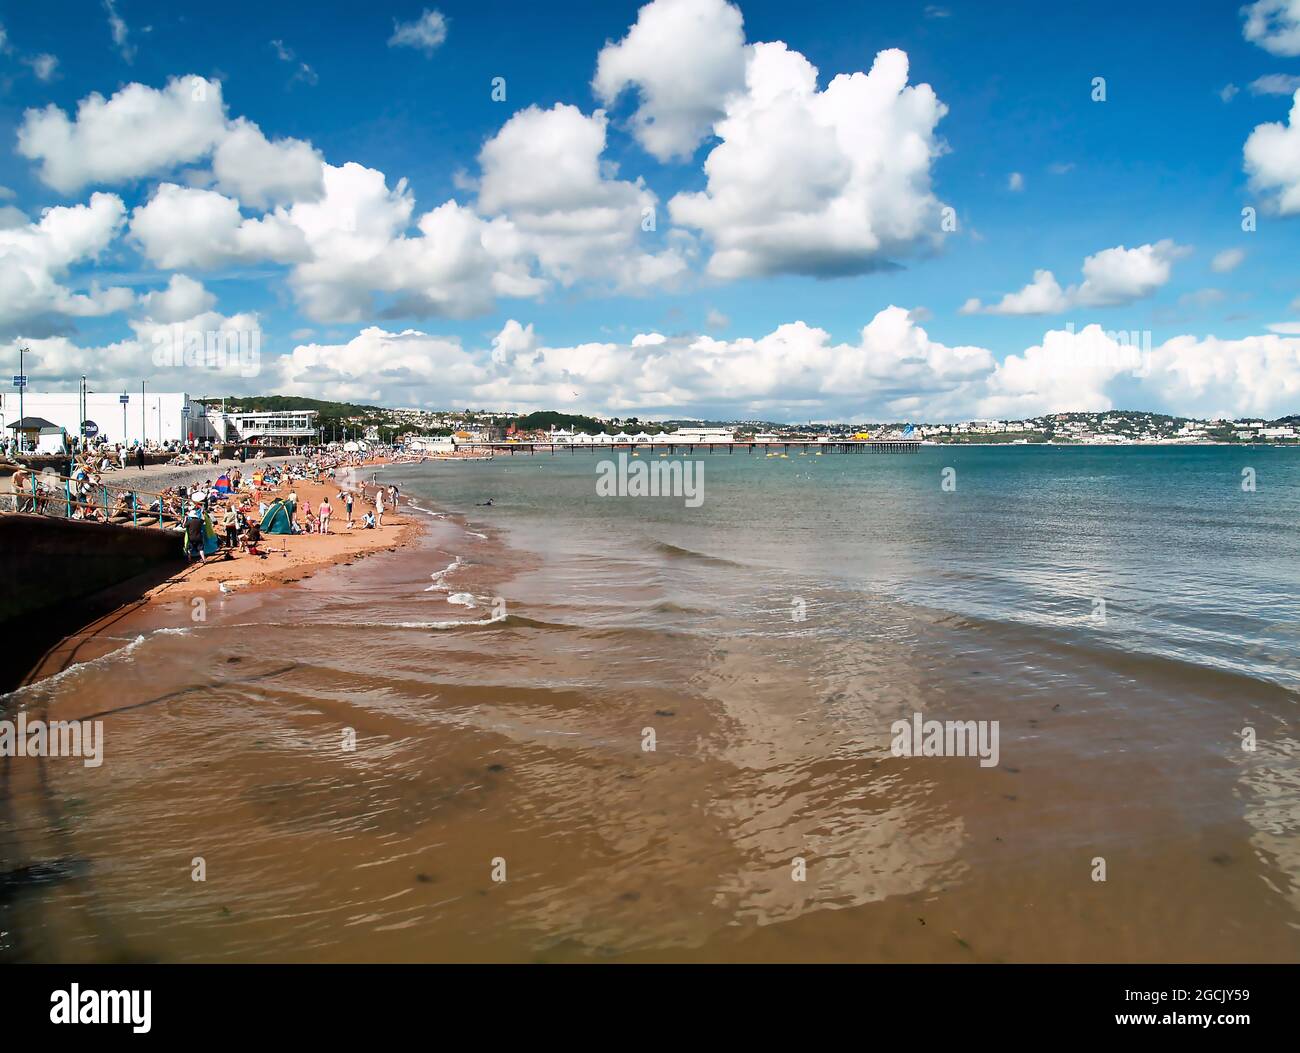 Une journée d'été ensoleillée à la plage de Paignton sur la 'Côte d'Azur' Torbay, South Devon, sud-ouest de l'Angleterre, avec des vacanciers sur le sable pendant Banque D'Images